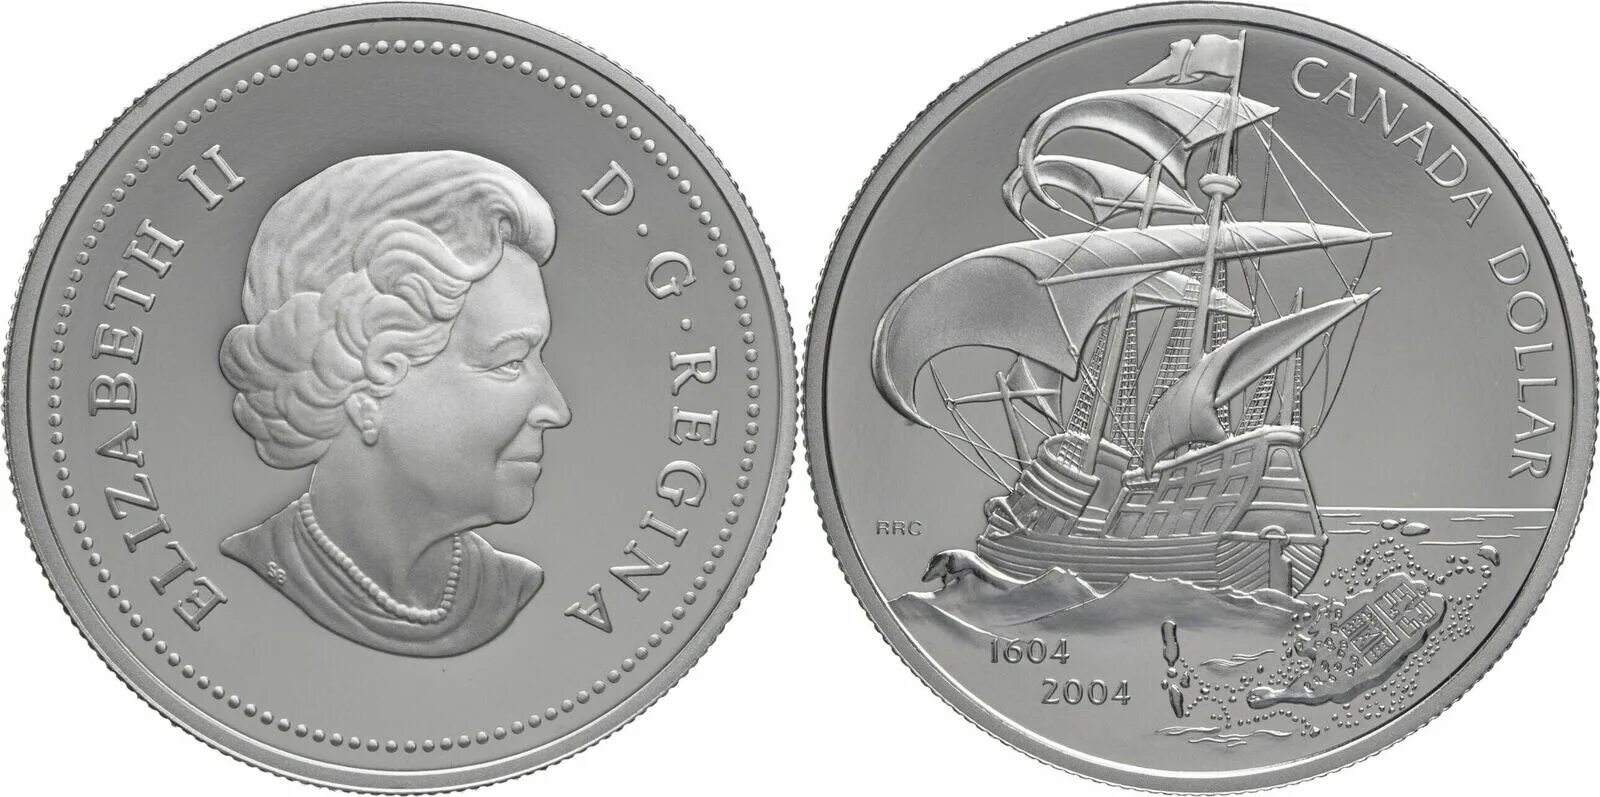 Монета памятная Elizabeth II nive one Dollar. B2 first